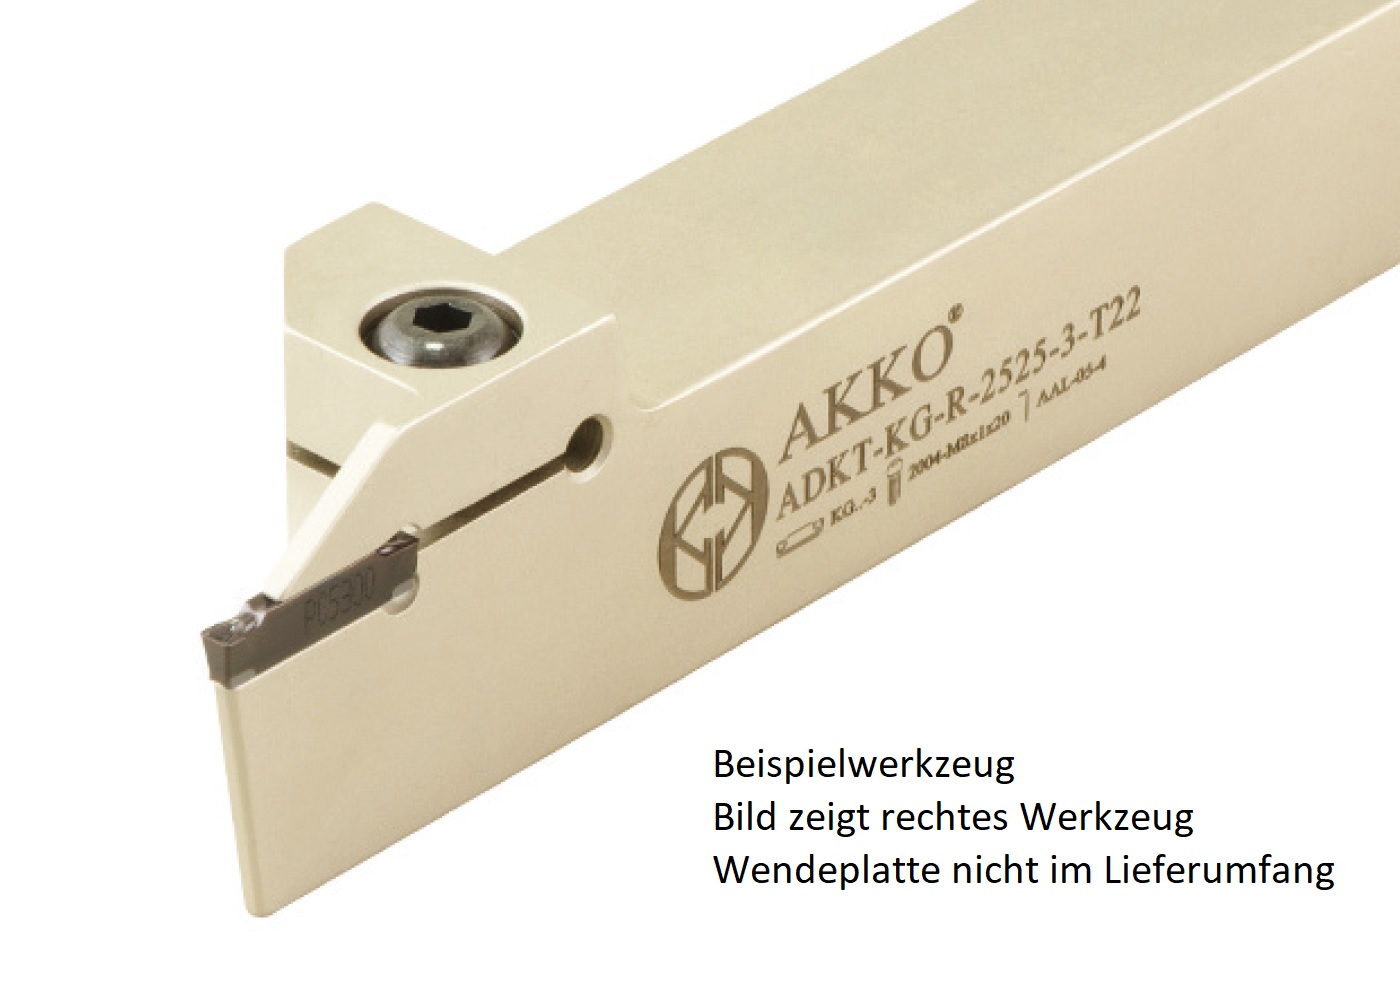 AKKO-Außen-Stechhalter, kompatibel mit Korloy-Stechplatte KG..-5
links, Schaft 25 x 25 mm